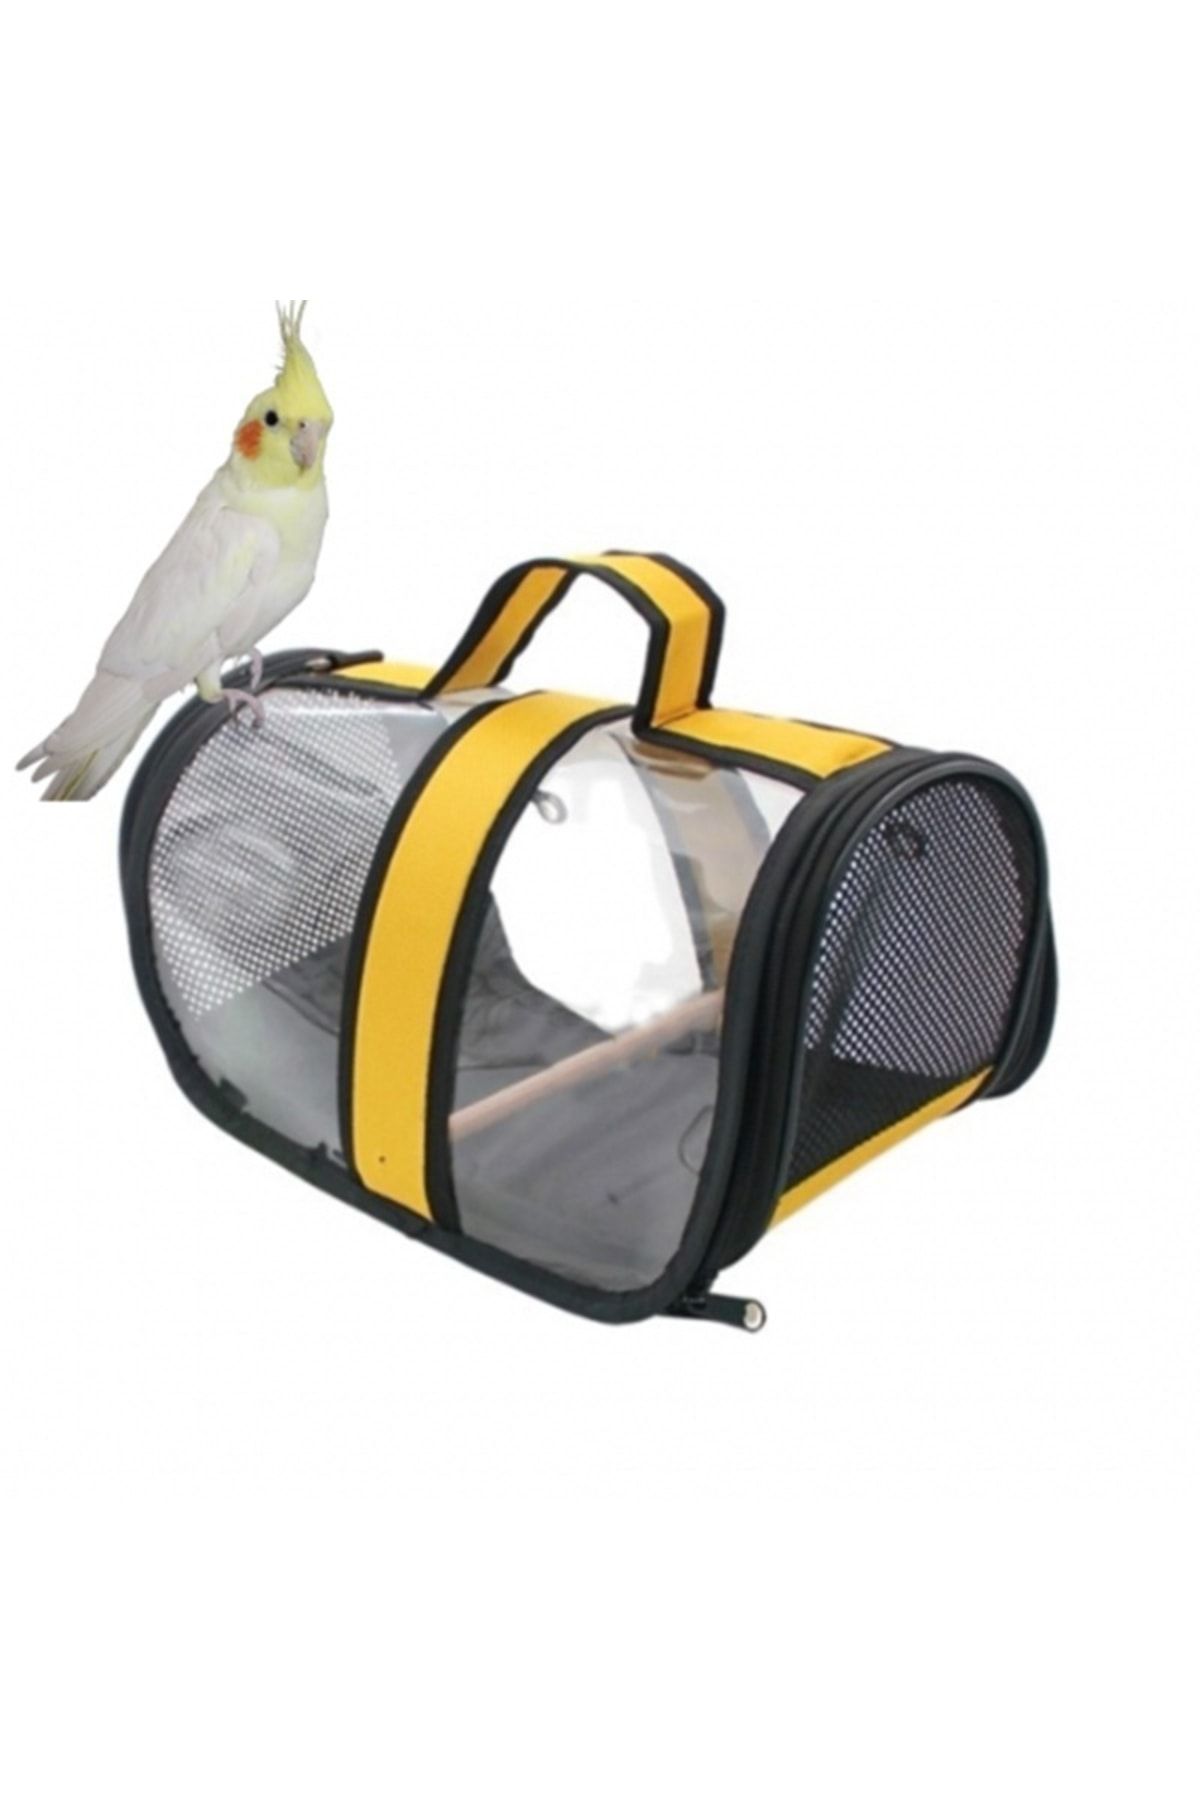 AlaPet Sultan Papağanı Taşıma Çantası (tünekli) Royal Capitano Sarı Kuş Taşıma Çantası (30cmx22cmx21cm)